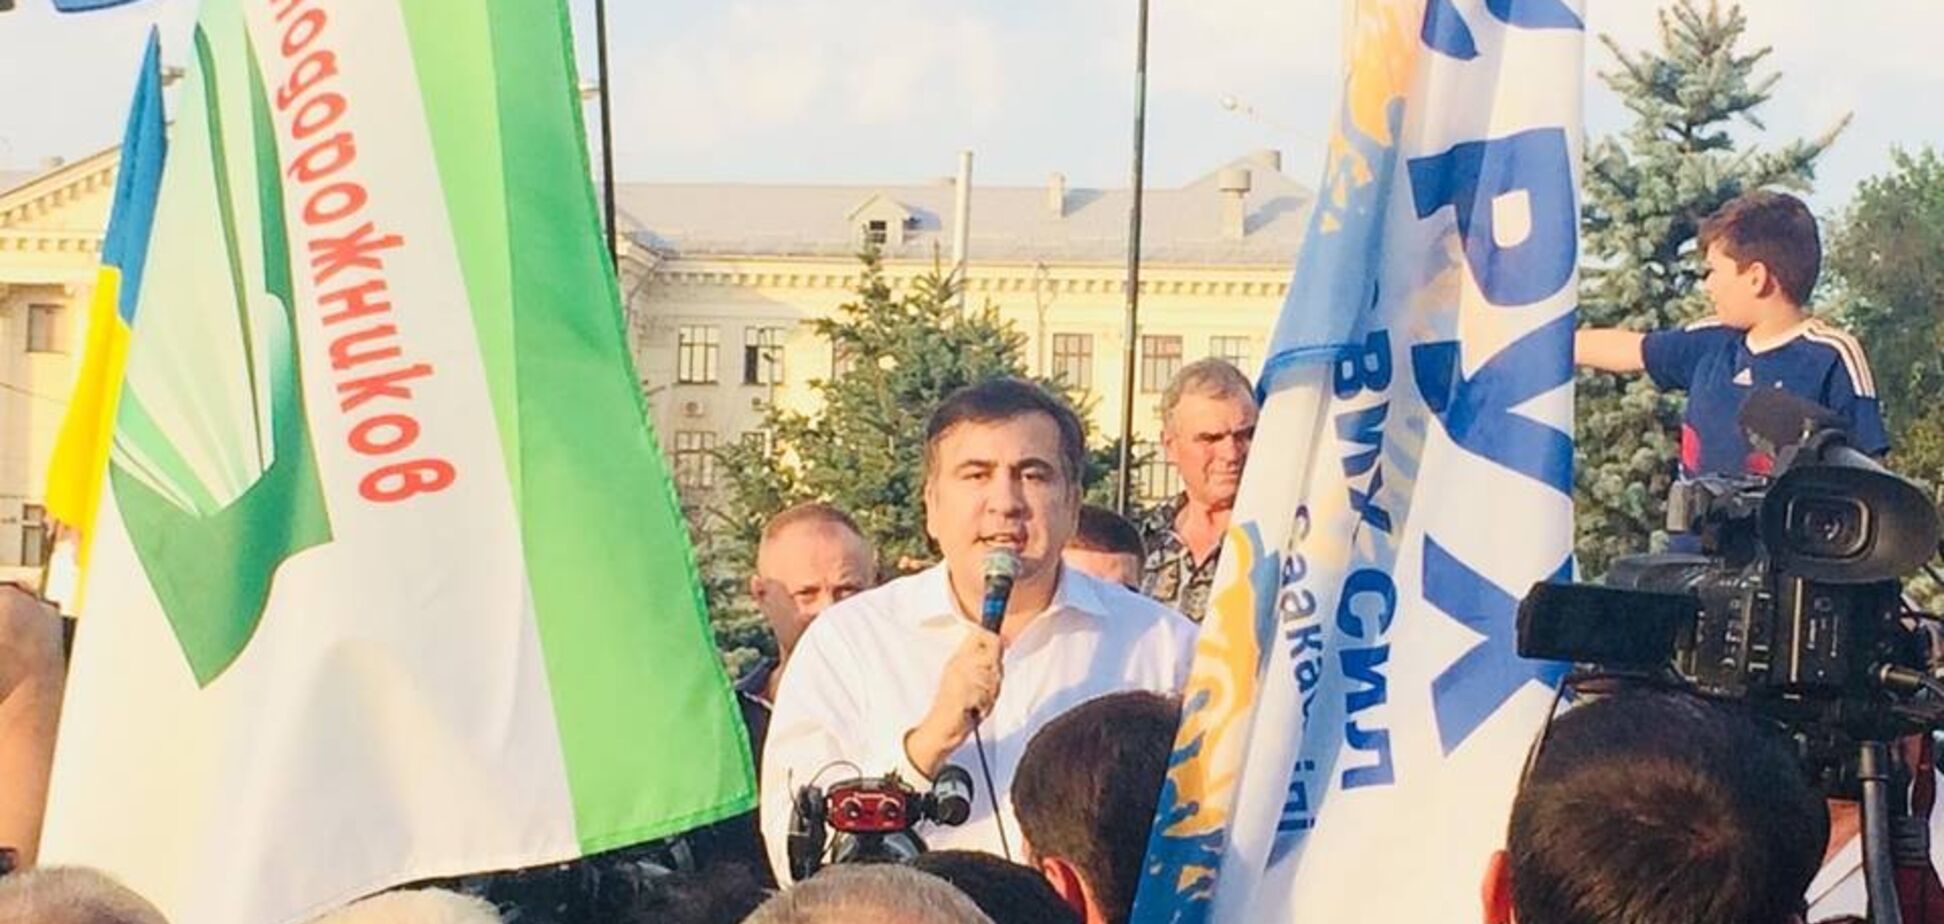 Михаил Саакашвили прибыл в Запорожье для борьбы с олигархами